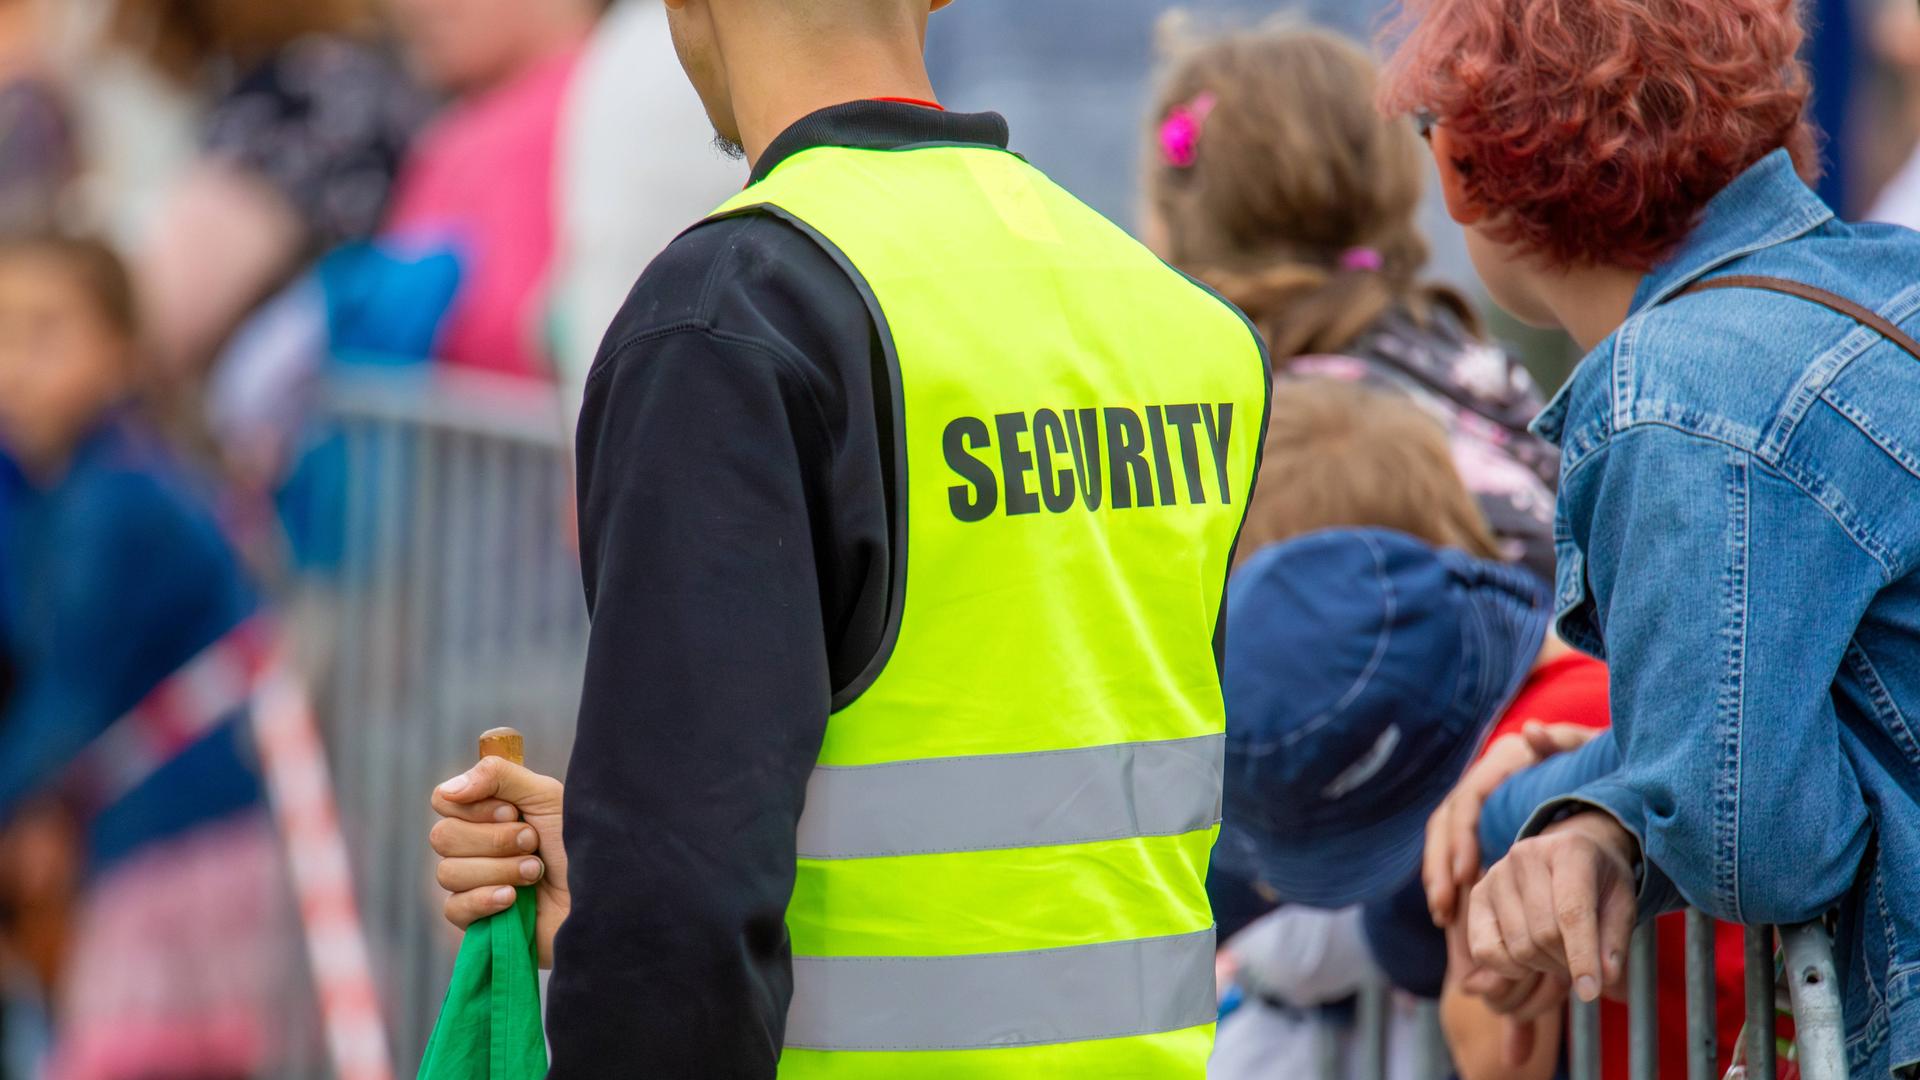 Mitarbeiter eines Sicherheitsdienstes mit gelber Warnweste mit Aufschrift "Security" sichert eine Veranstaltung.